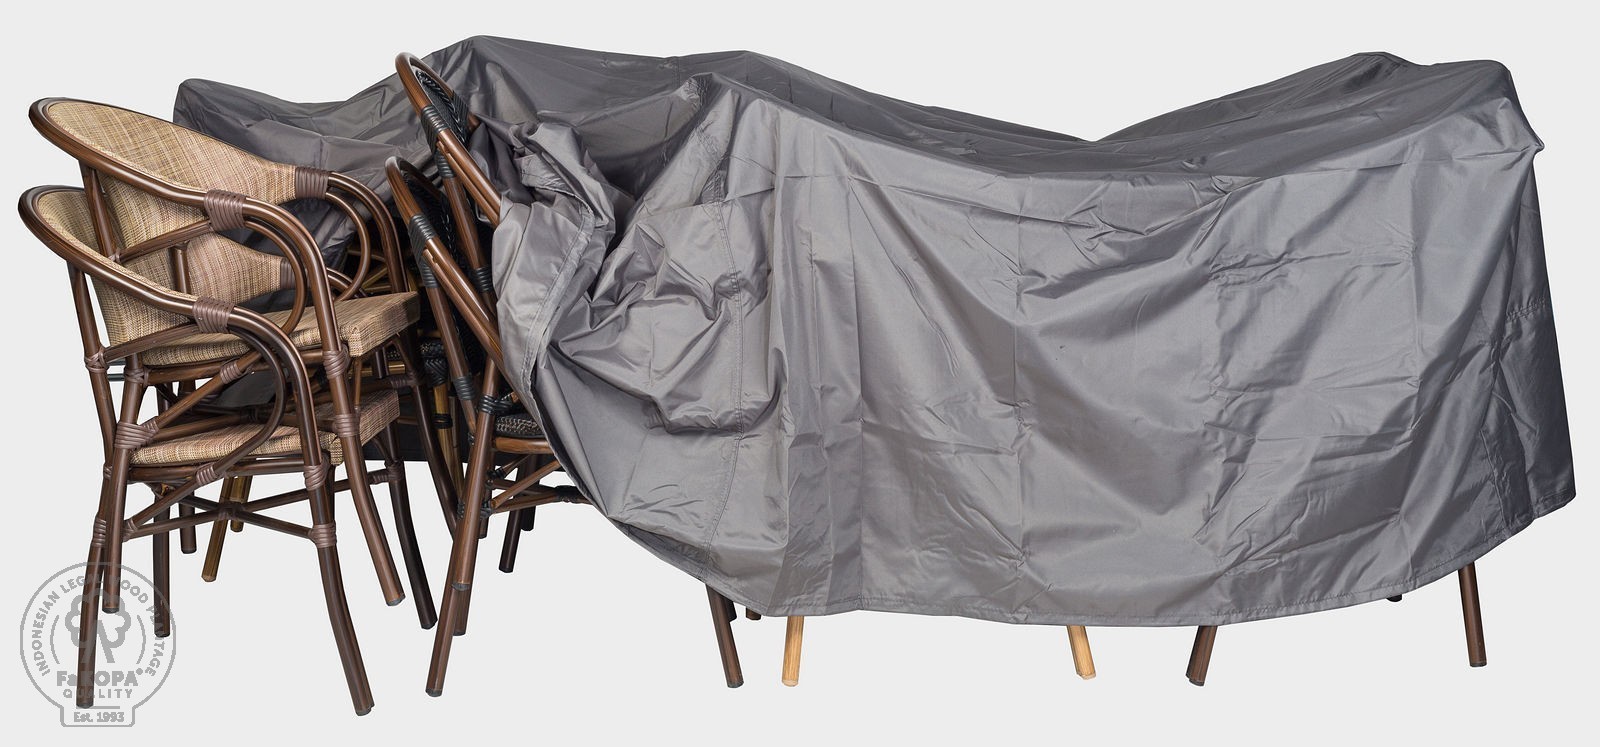 FaKOPA s. r. o. Krycí plachta na záhradní nábytek - 250x300x75 cm, 100 % polyester